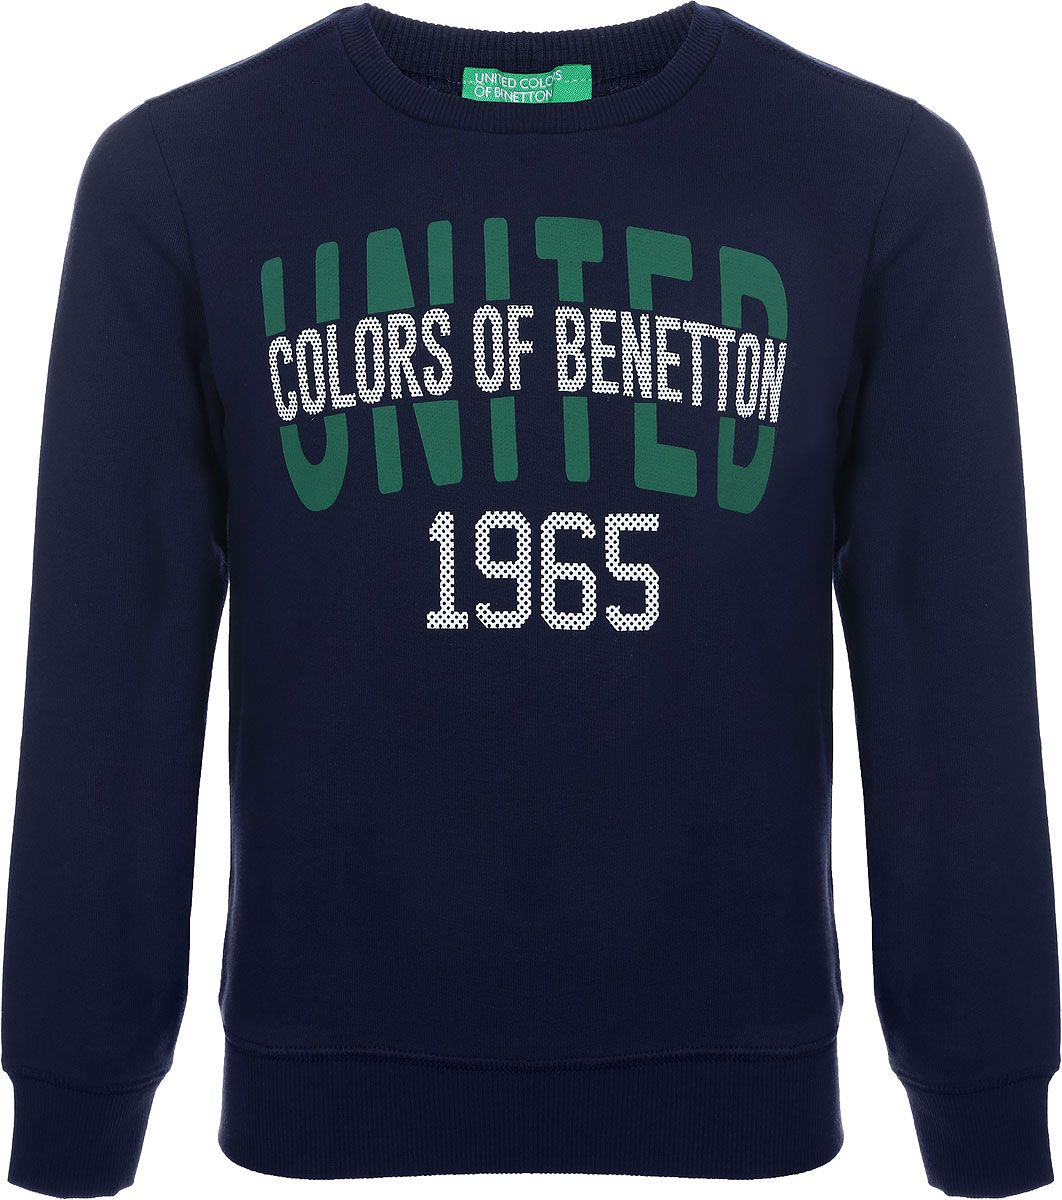    United Colors of Benetton, : -. 3J68C13ZU_13C.  M (130)